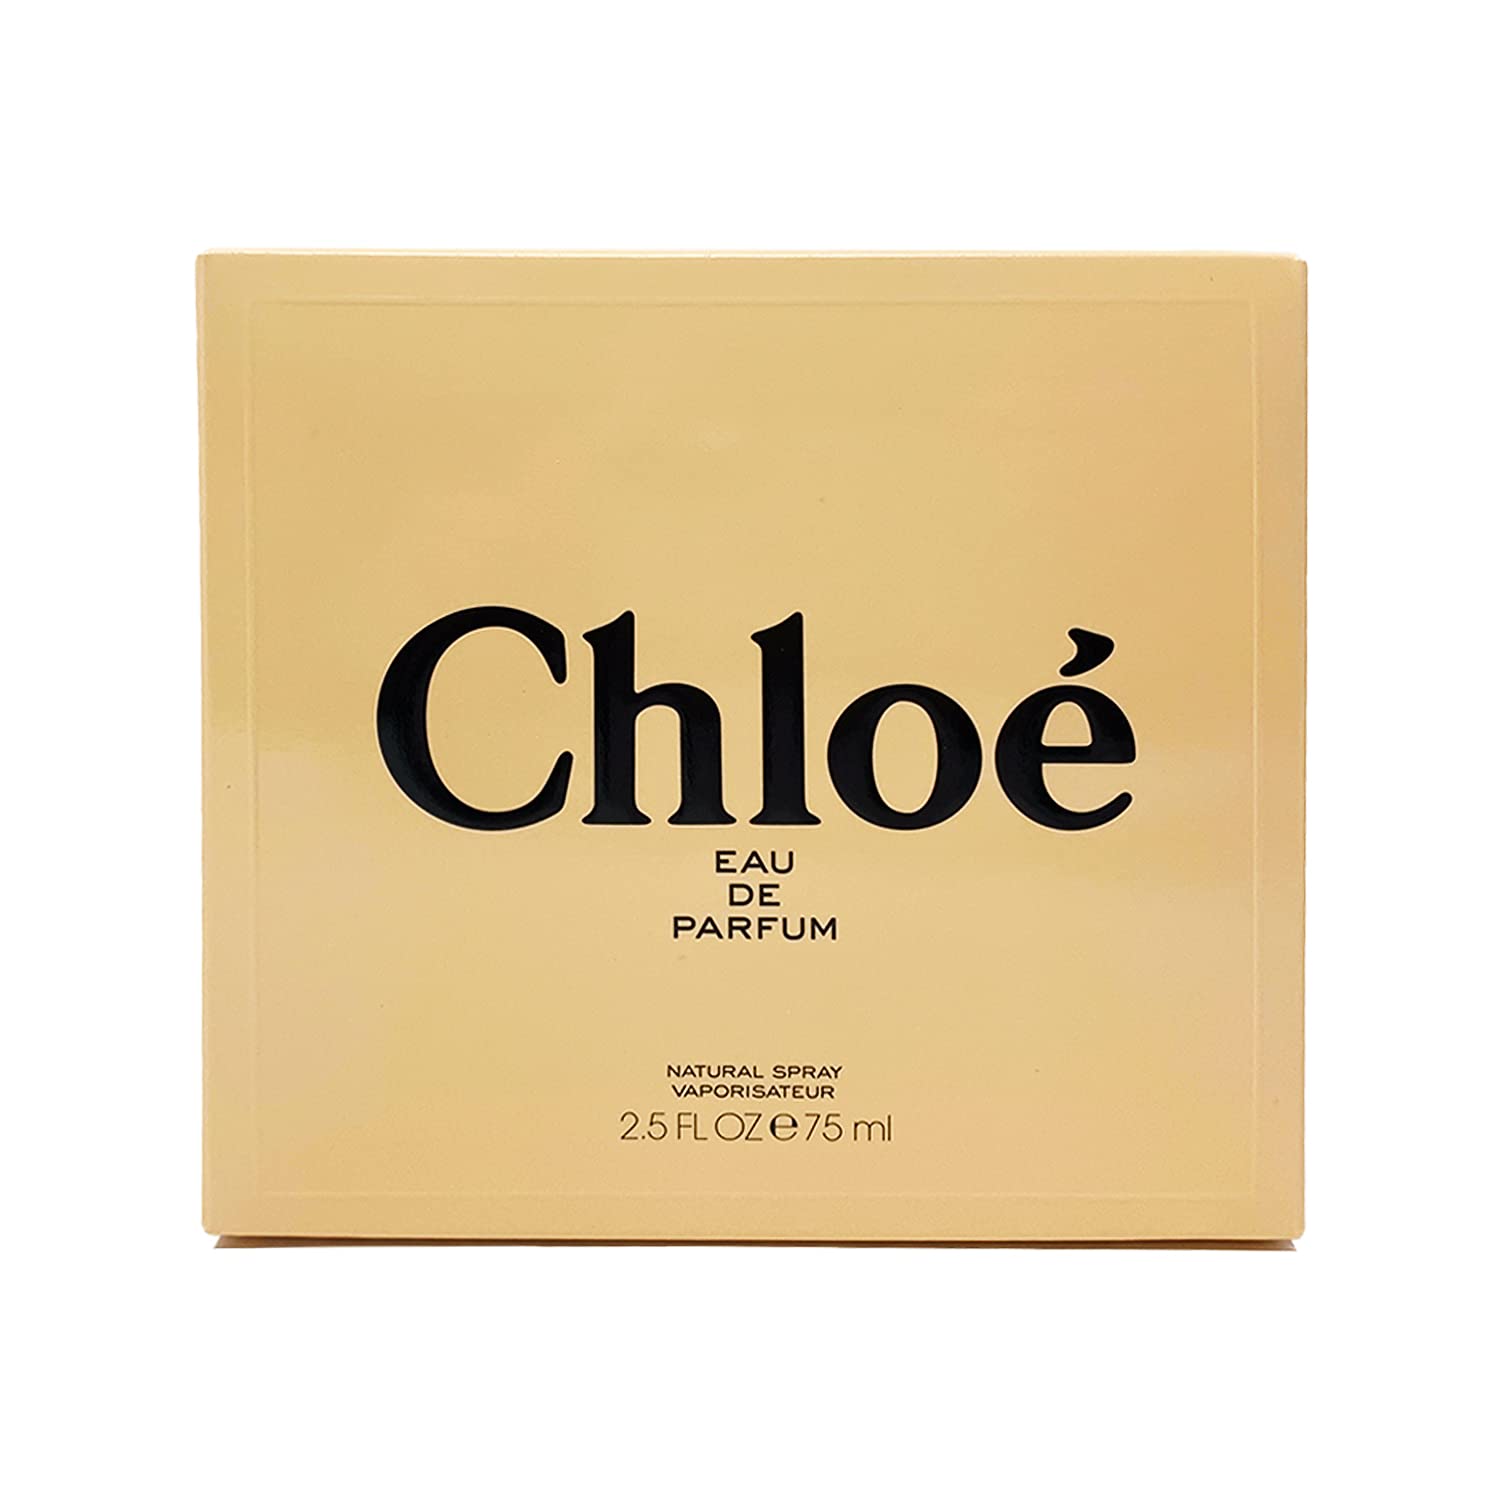 Chloe (New) by Chloe Eau De Parfum Spray 2.5 oz / 75 ml for Women